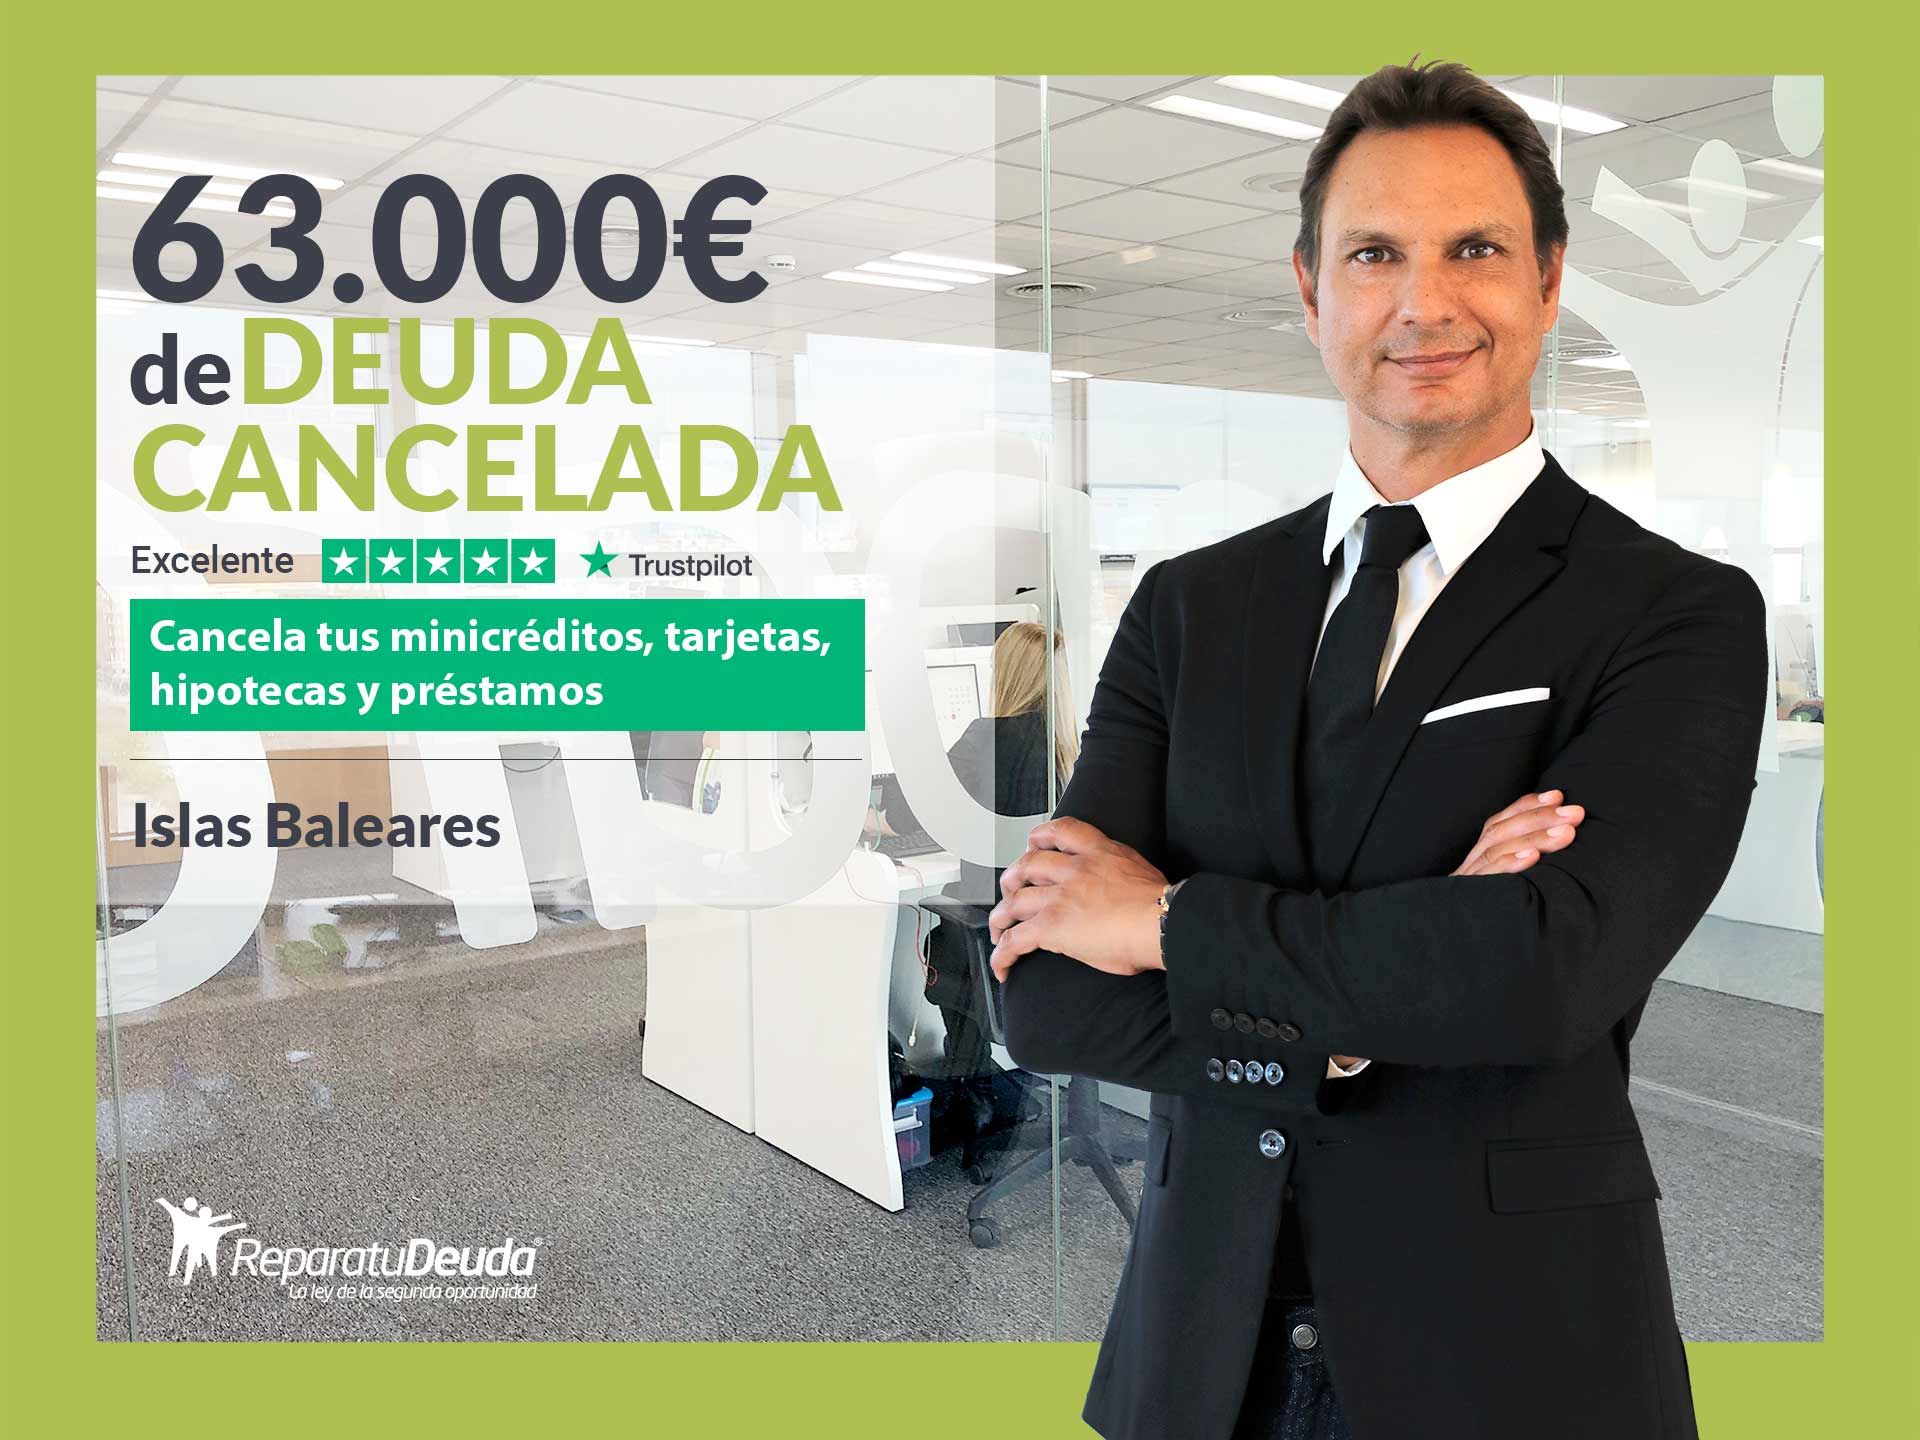 Repara tu Deuda Abogados cancela 63.000? en Mallorca (Baleares) con la Ley de Segunda Oportunidad